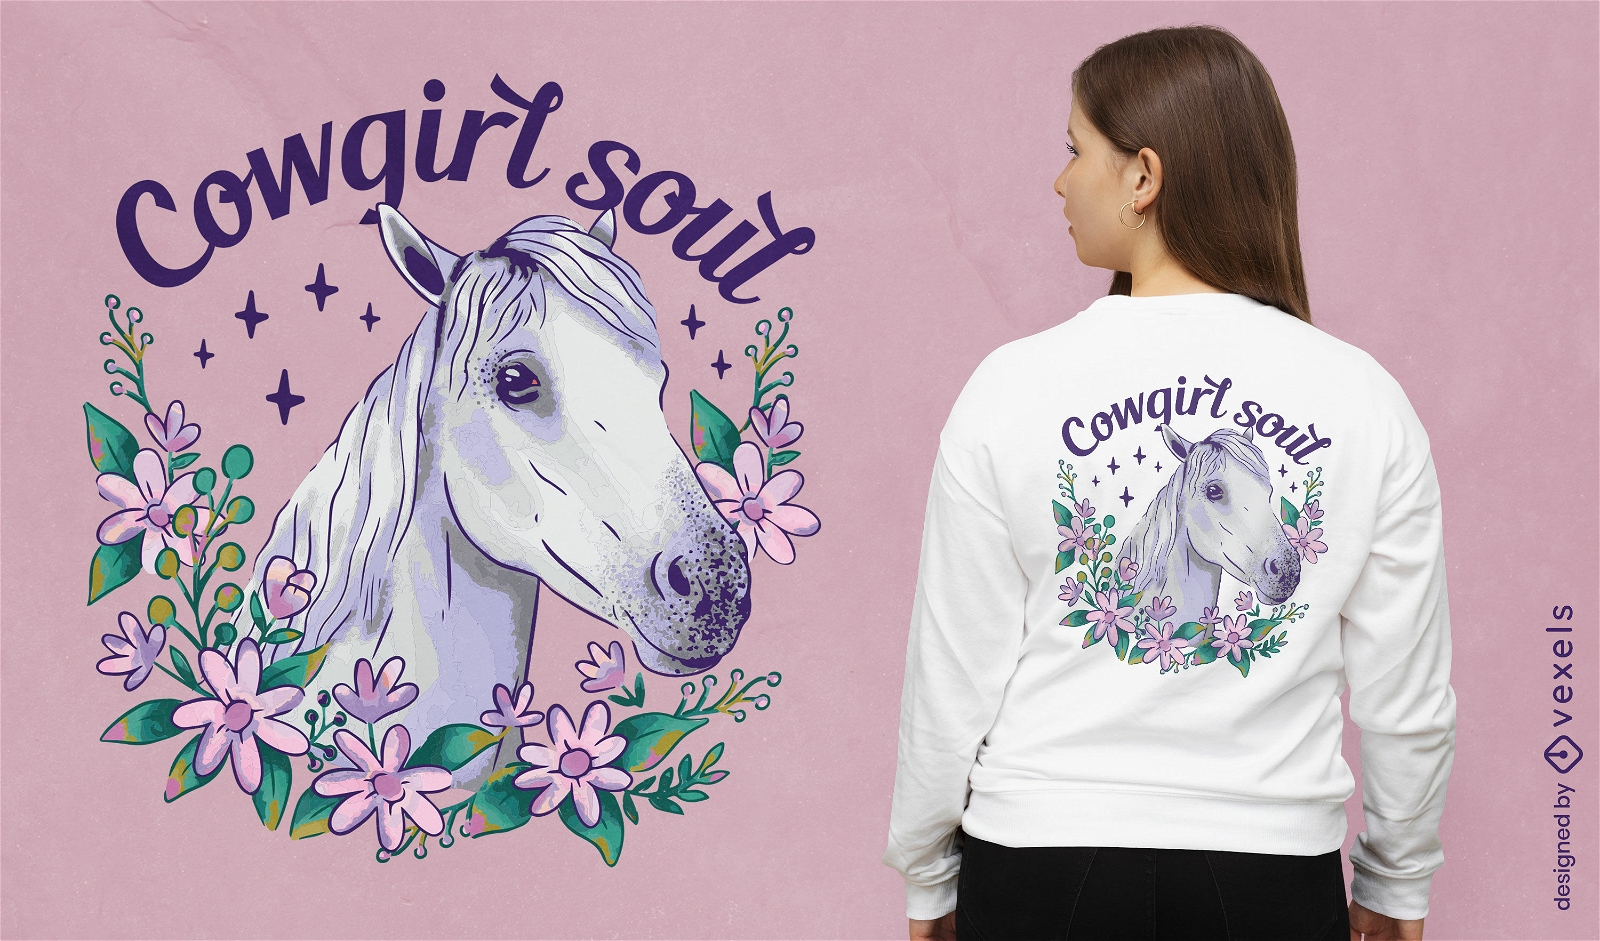 Wei?es Pferd mit Blumen-T-Shirt-Design